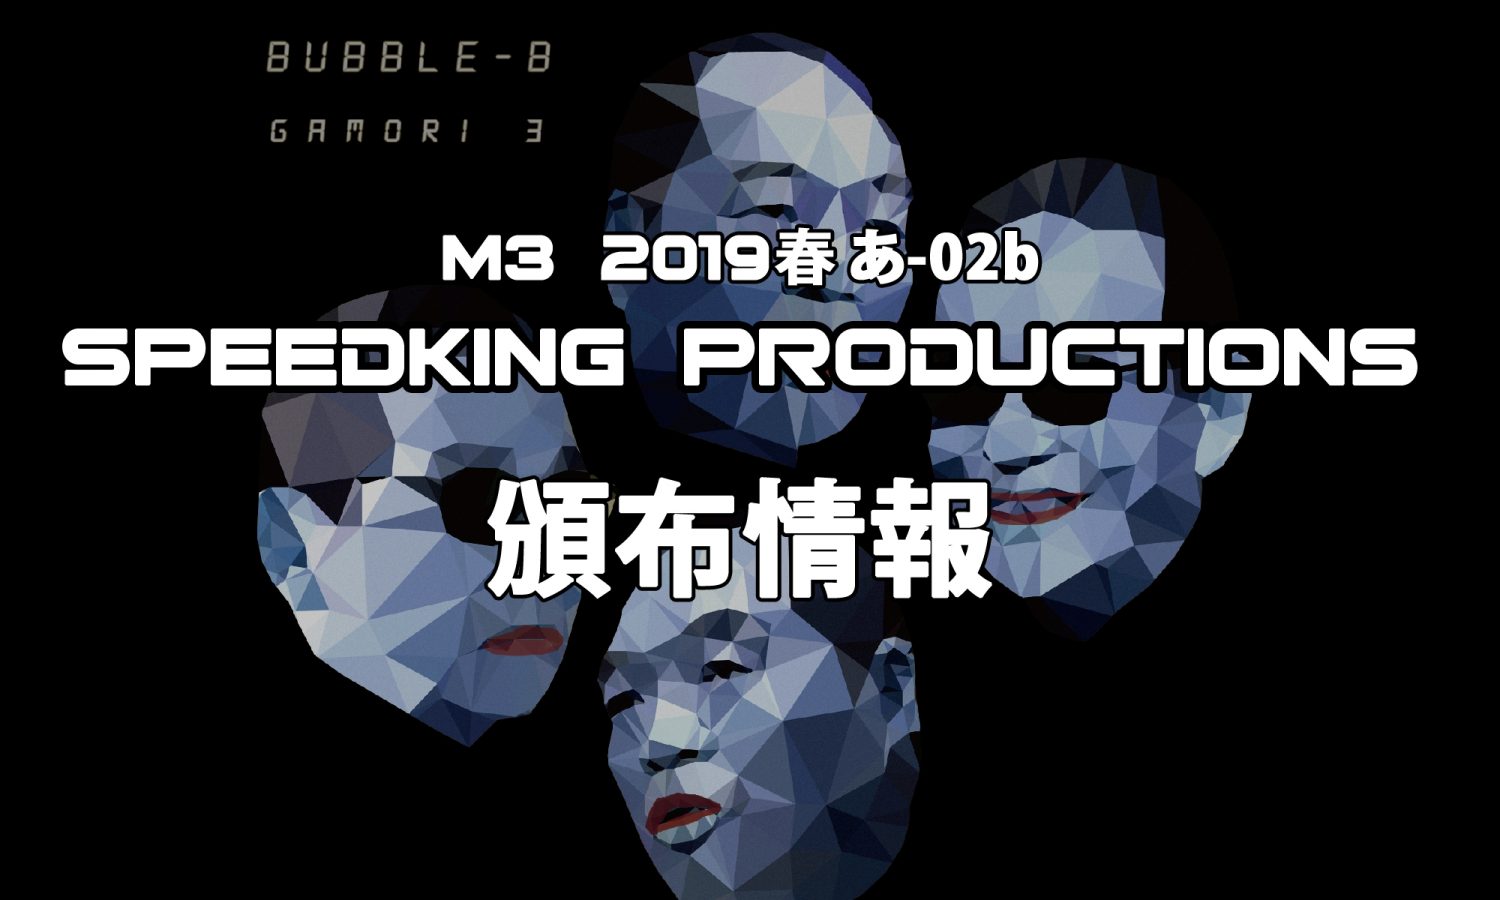 M3 2019春 SPEEDKING PRODUCTIONS 頒布情報